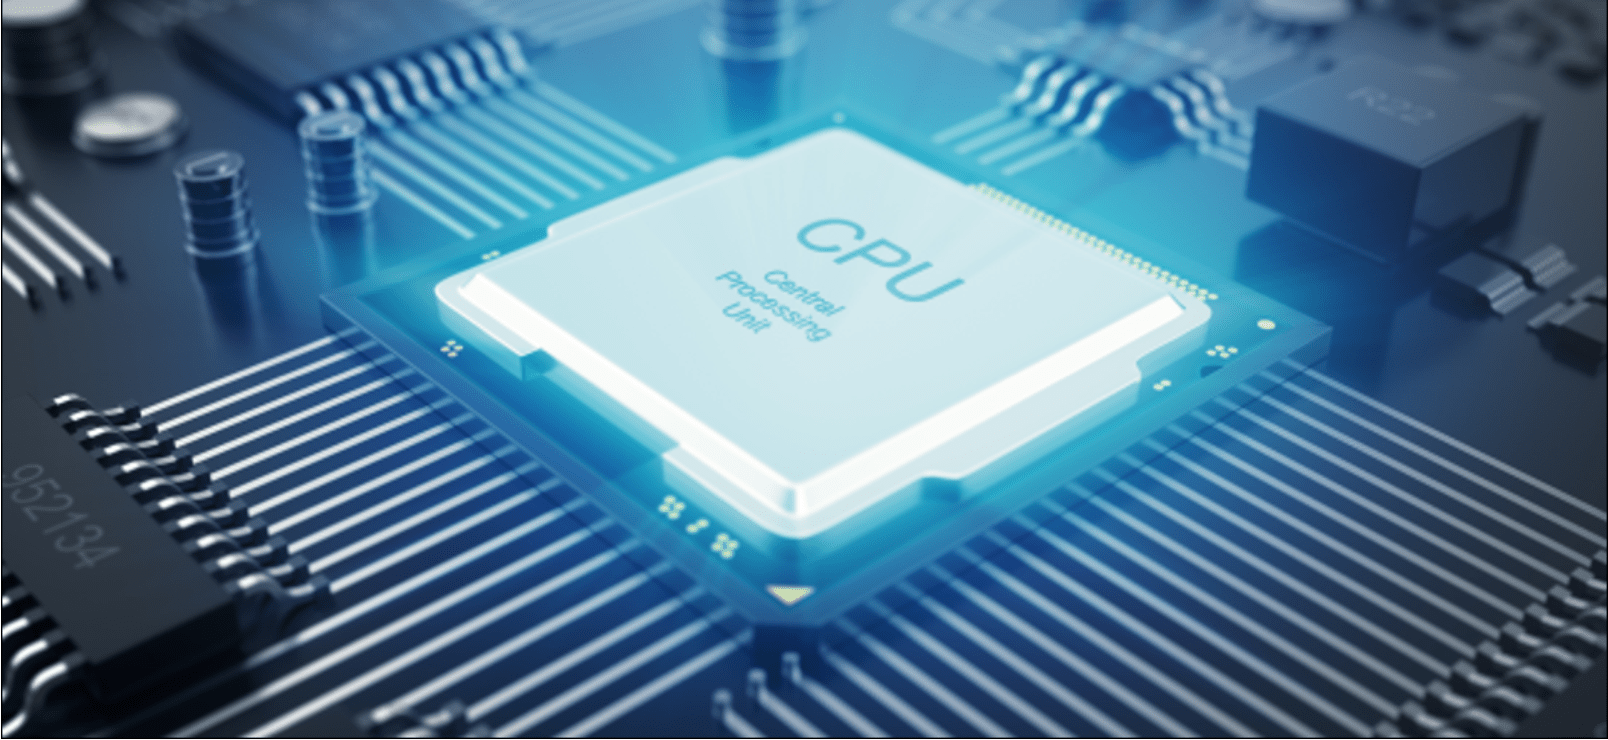 پردازنده-چیست-cpu-چیست-درباره-cpu-چگونه-کار-میکند-گیت-منطقی-هم-رویش